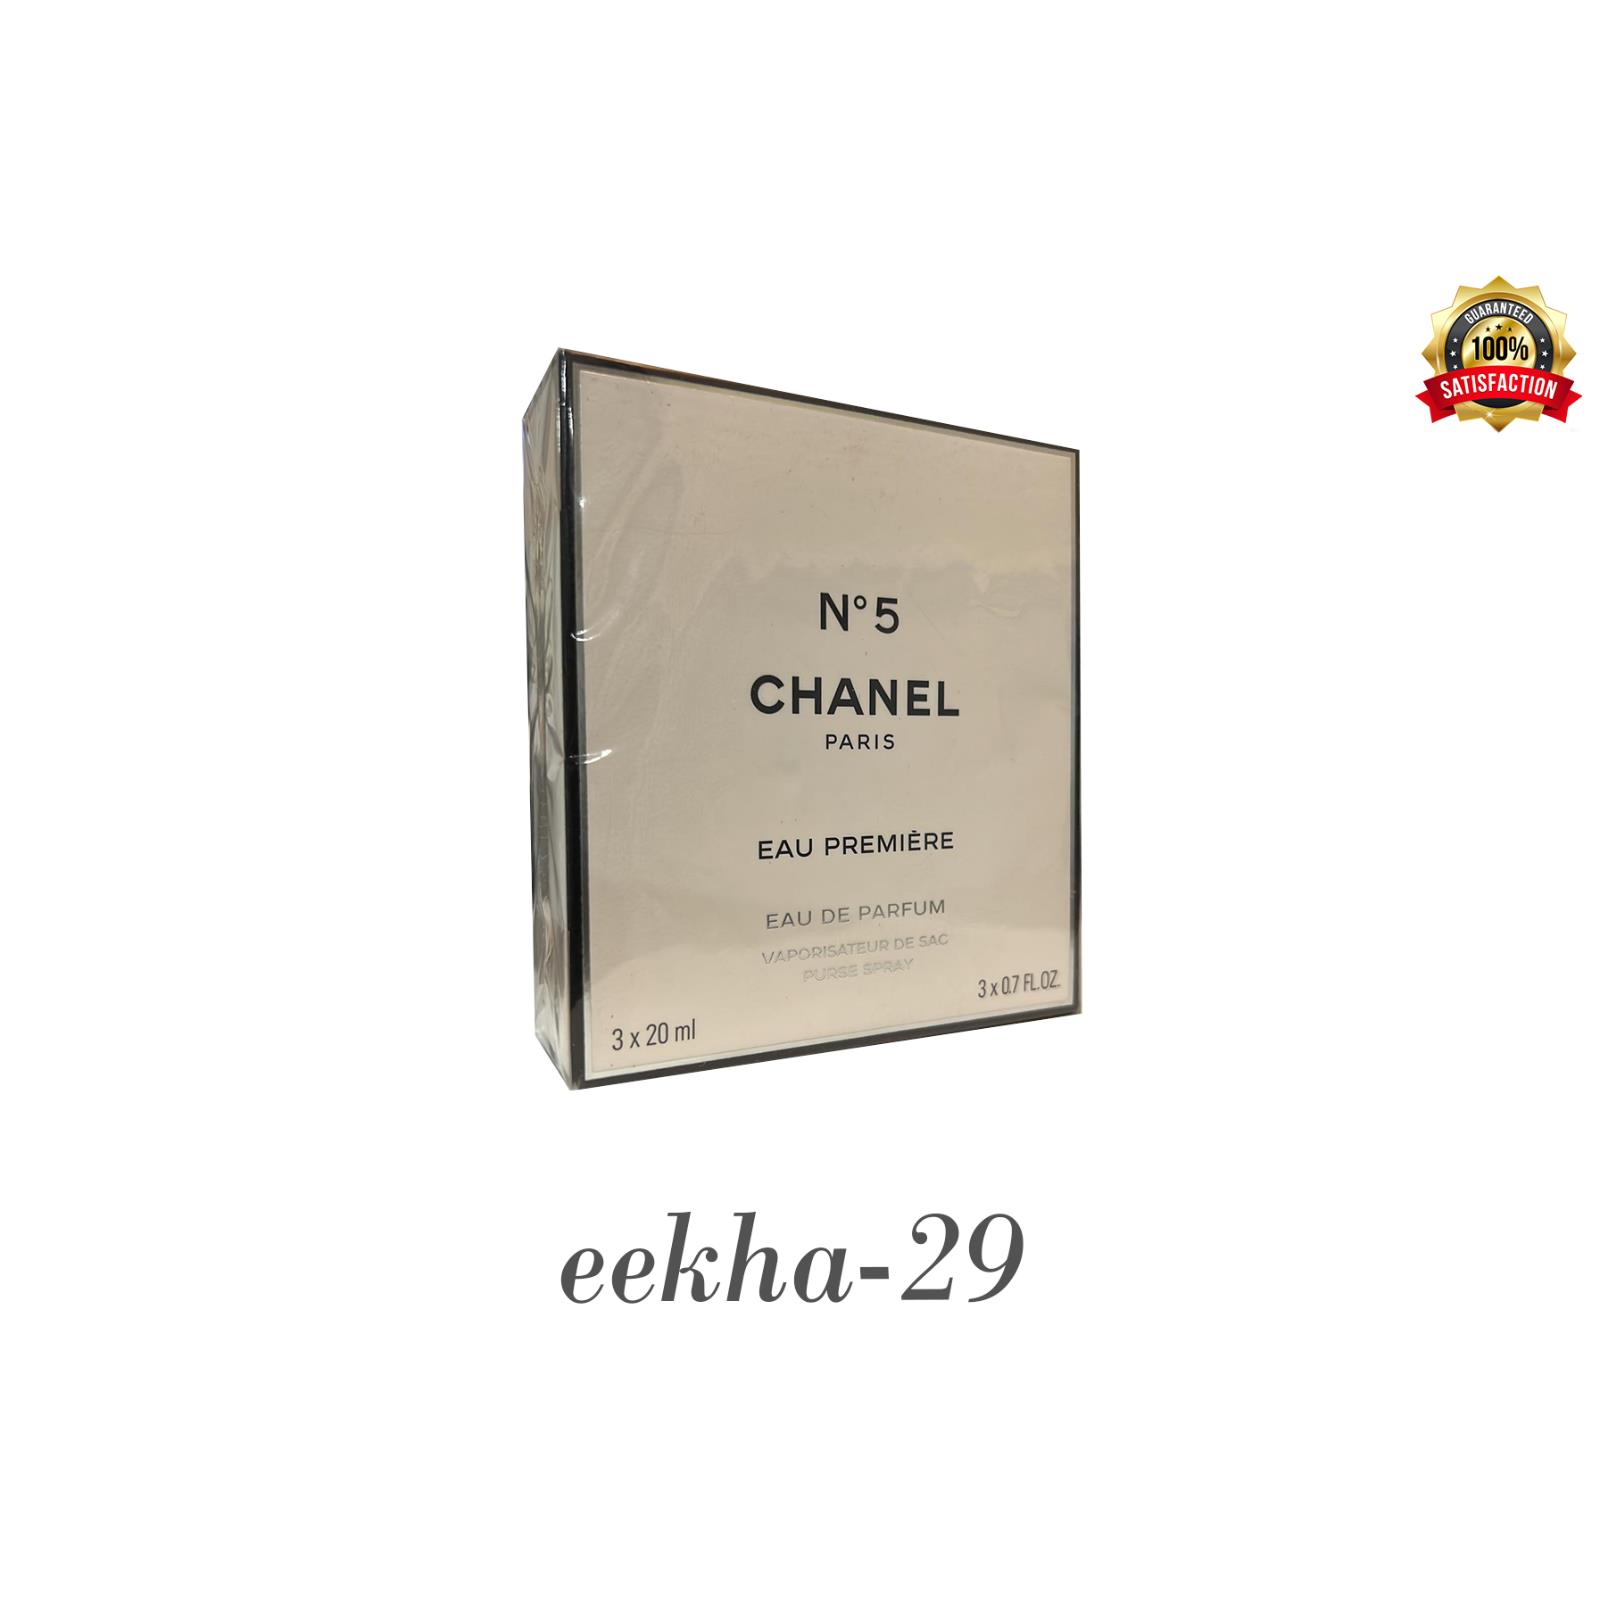 Chanel No 5 Eau Premiere 3 20 Ml Eau De Parfum Purse Spray